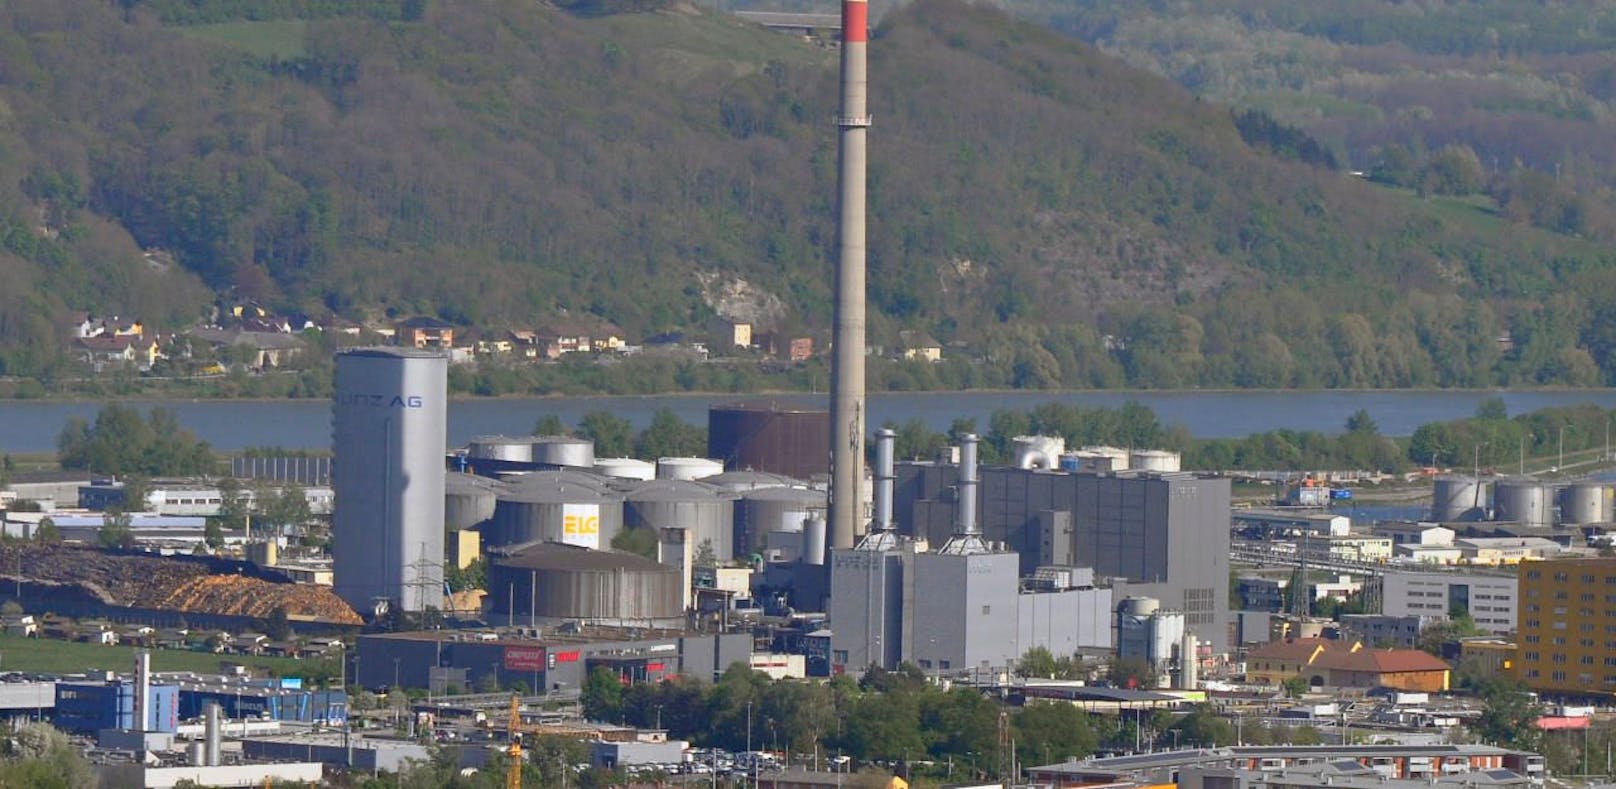 Im Chemiepark Linz traten am Mittwochmorgen 1.500 Liter Salpetersäure aus. 